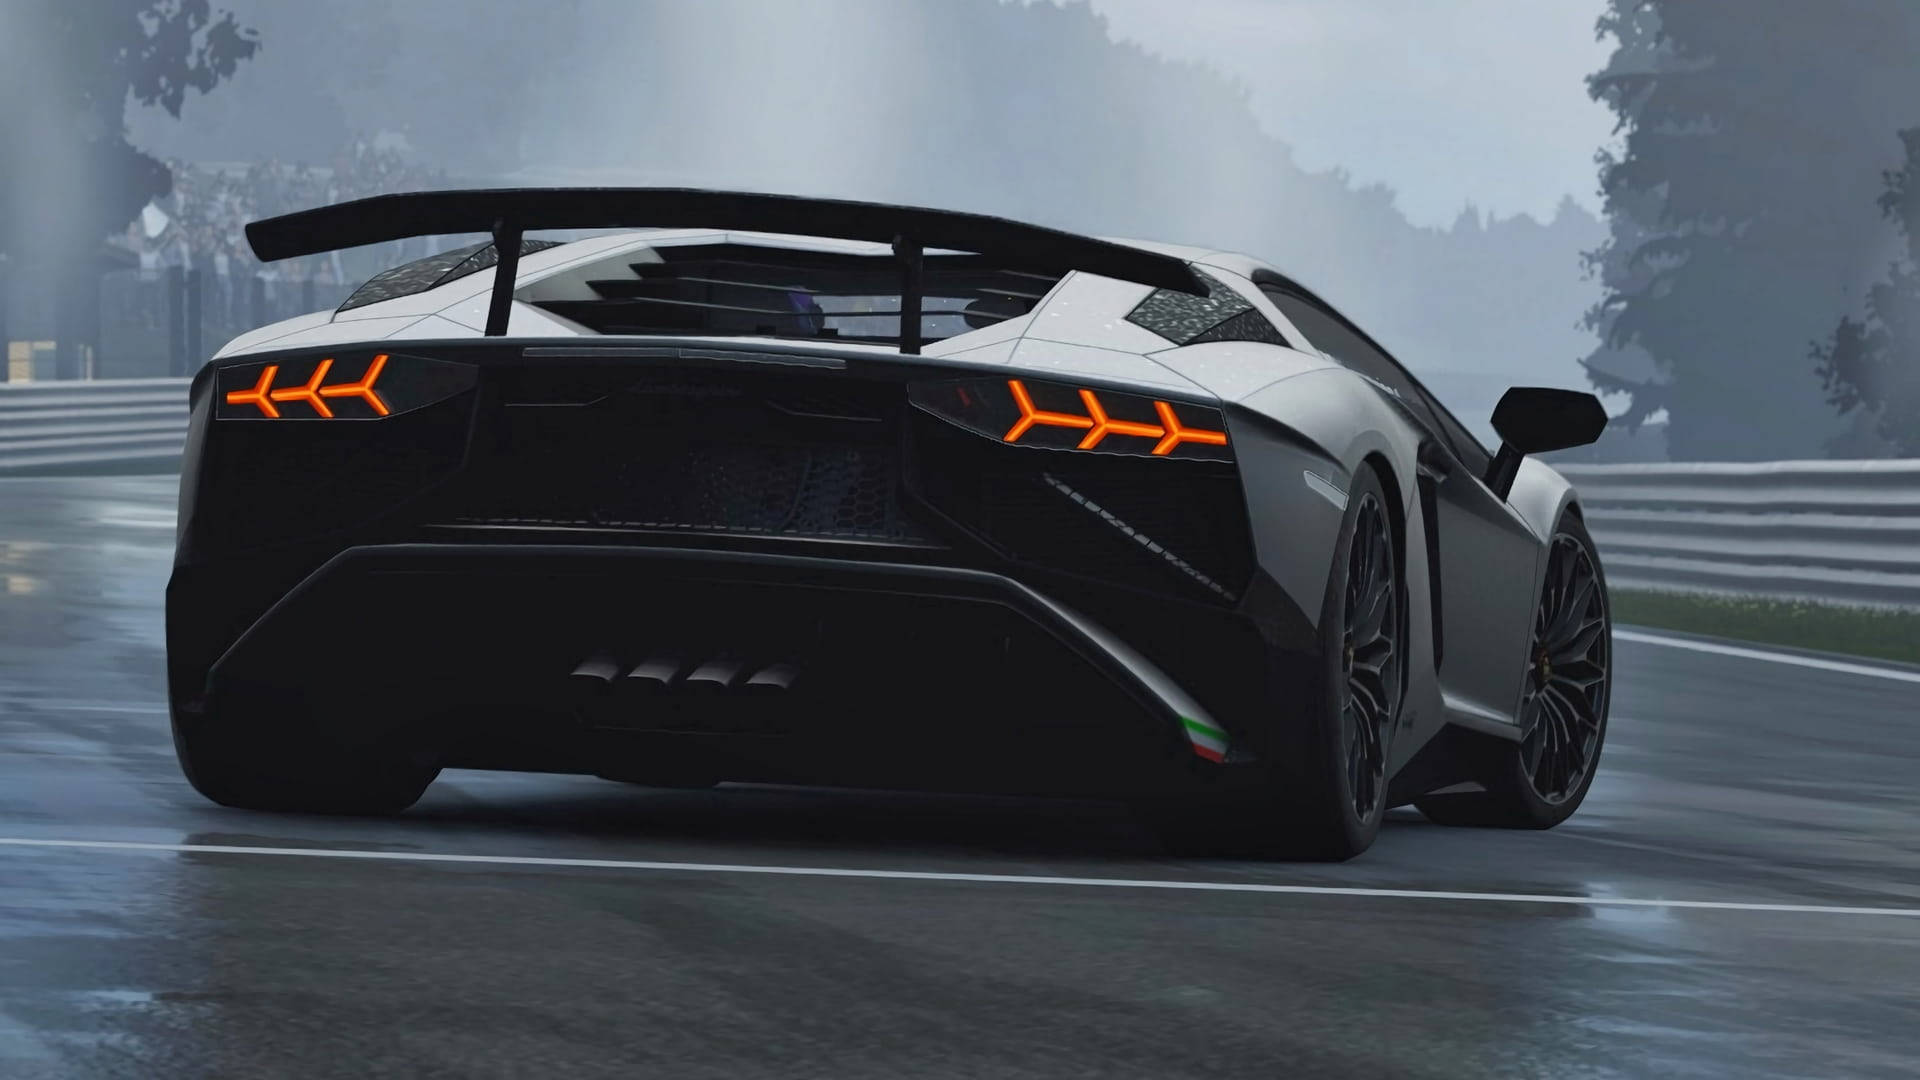 Phenomenal Speed And Luxury - Lamborghini In 4k Wallpaper